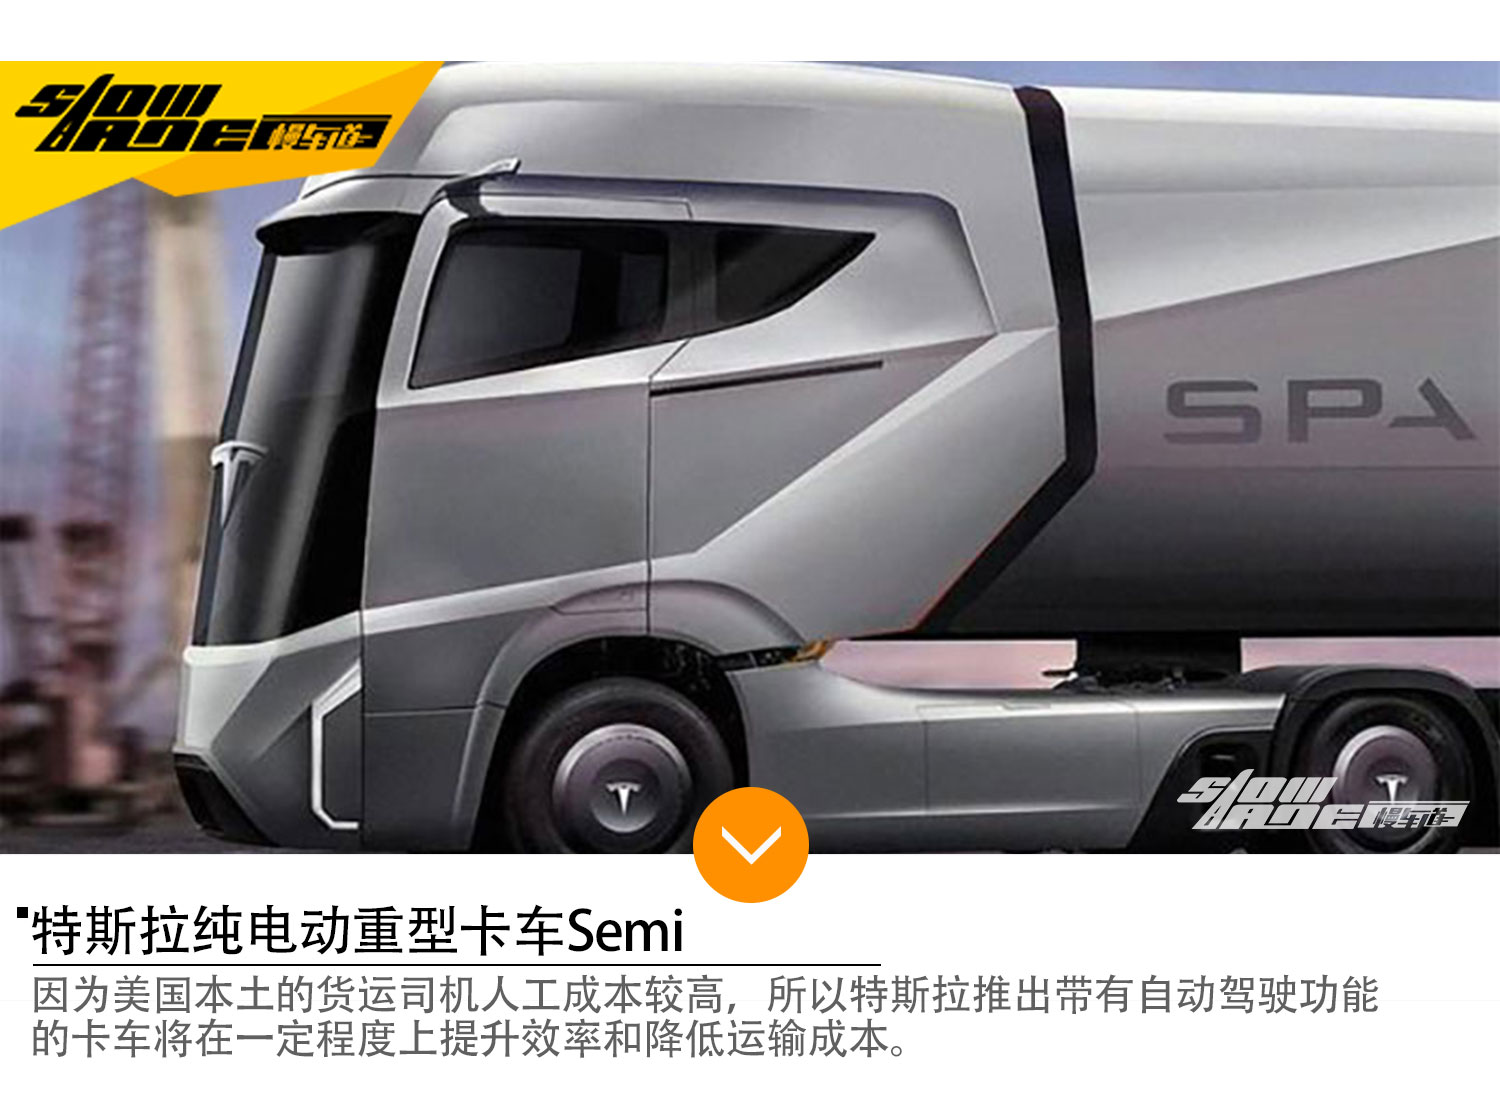 特斯拉纯电动重型卡车Semi 10月26日发布